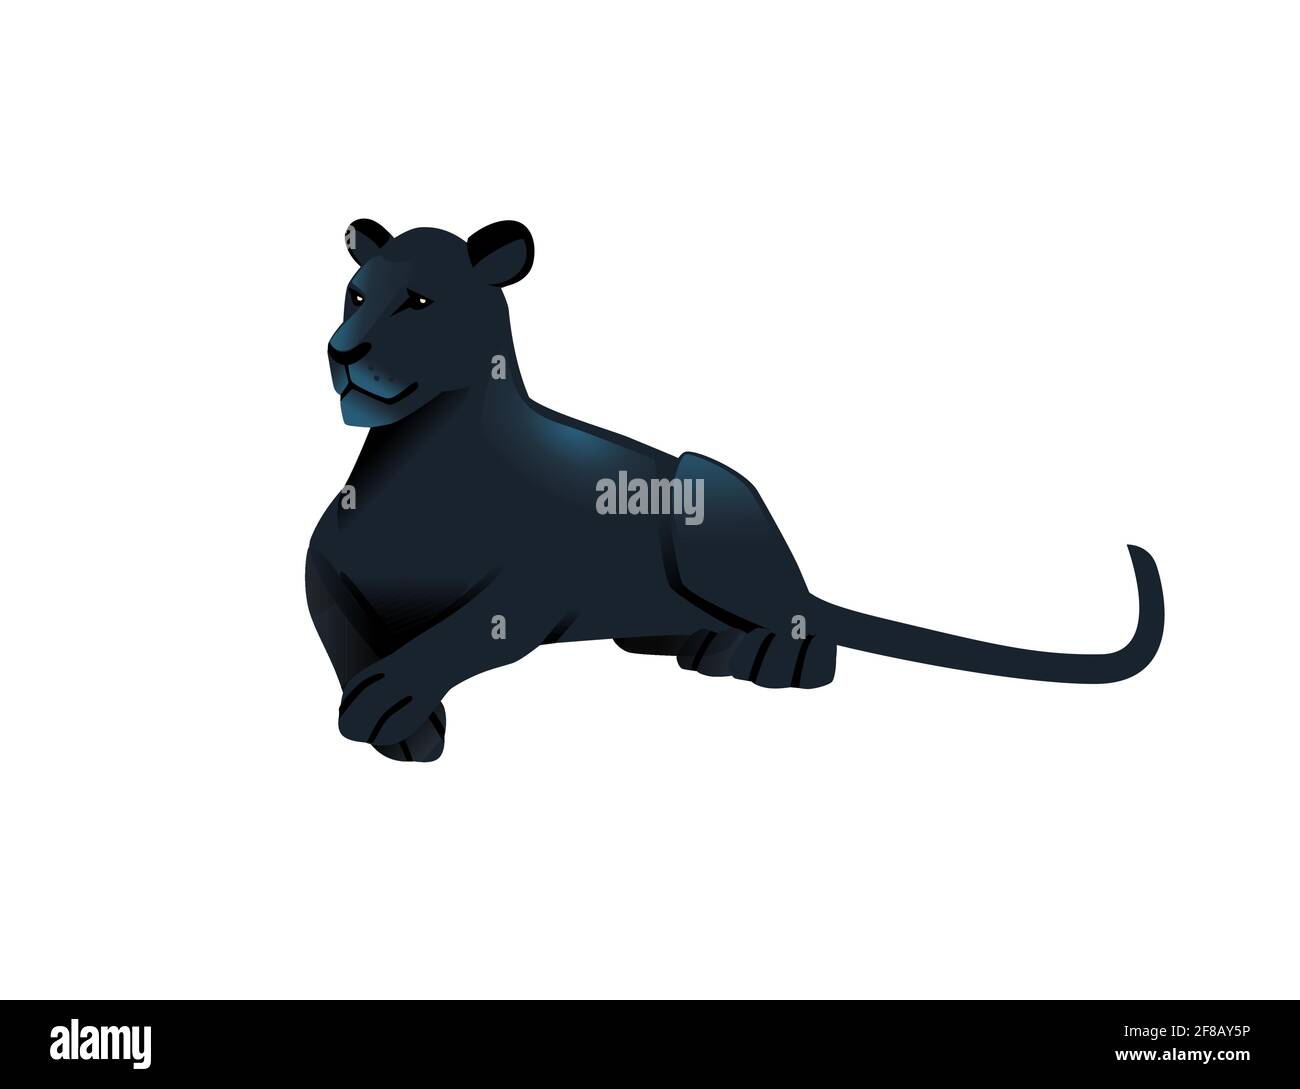 Panthère noire sauvage grand chat africain chasseur de jungle animal de dessin animé illustration vectorielle de conception sur fond blanc Illustration de Vecteur